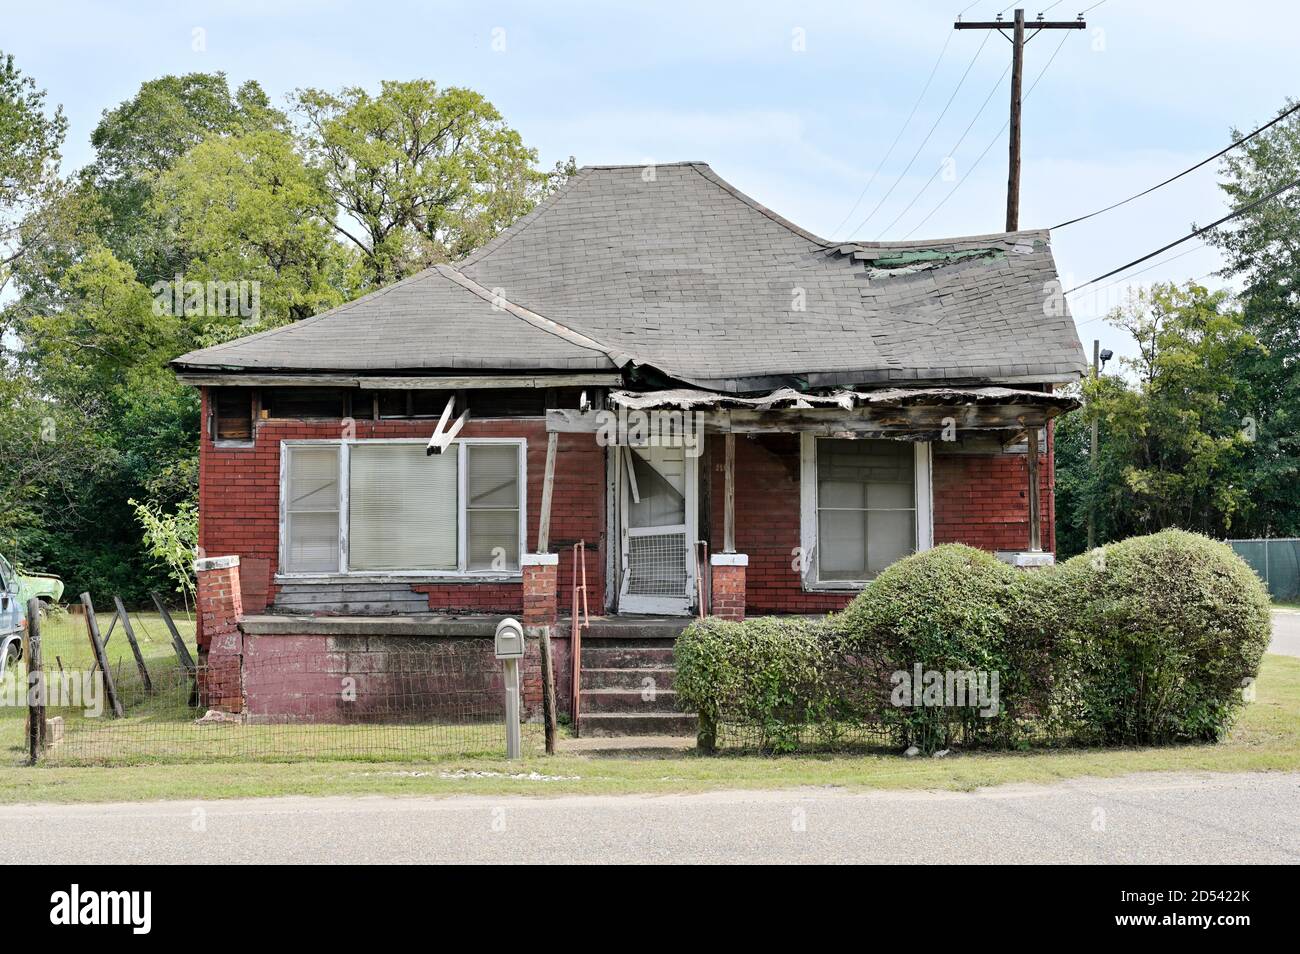 Leer, leer oder verlassenen Haus oder zu Hause in einer armen Gegend zeigen das Ausmaß der Armut in den innerstädtischen Bereich von Montgomery Alabama, USA. Stockfoto